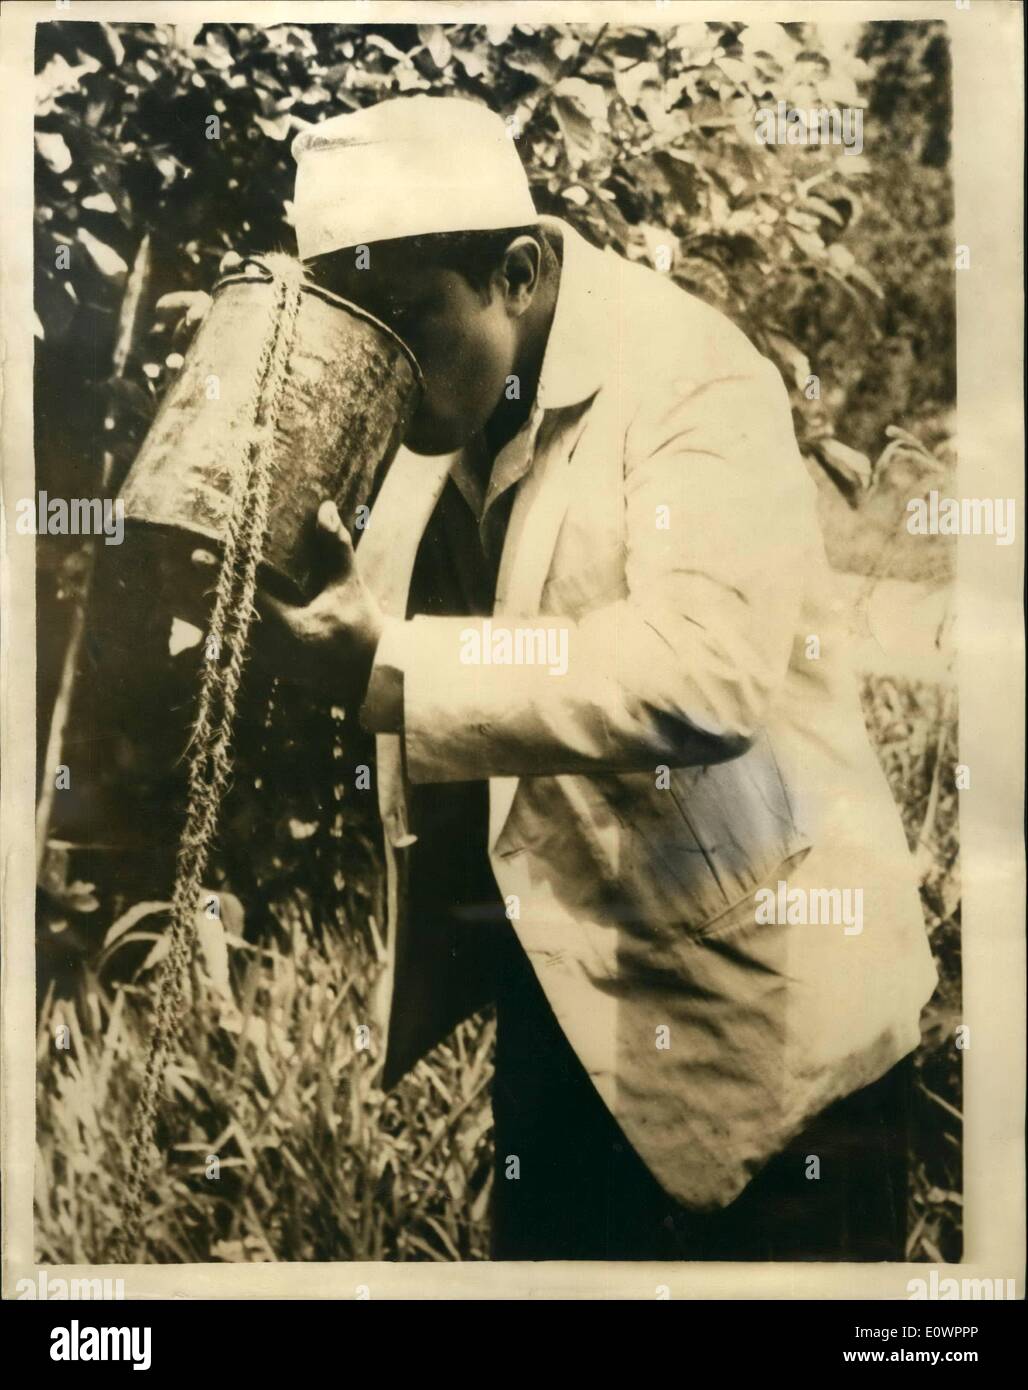 Nov. 11, 1963 - Il sultano drink da un secchio. Seyyid Jamshid Bin Abdullah, la nuova giovane Sultano di Zanzibar, ha recentemente portato una parte di 500 sul suo hobby preferito, un maiale selvatico battuta di caccia, nella foresta di Jozani, circa 20 miglia da Zanzibar town. Il Sultan è un bel tiro e ha ucciso come molti come 75 suini di un singolo viaggio. Questo era il suo primo viaggio tat egli è stato in grado di fare dopo la morte di suo padre. Mostra fotografica di:- durante un viaggio nella foresta, il partito, compreso il sultano e spenta la loro sete abbassando un secchio in un pozzo e acqua potabile Foto Stock